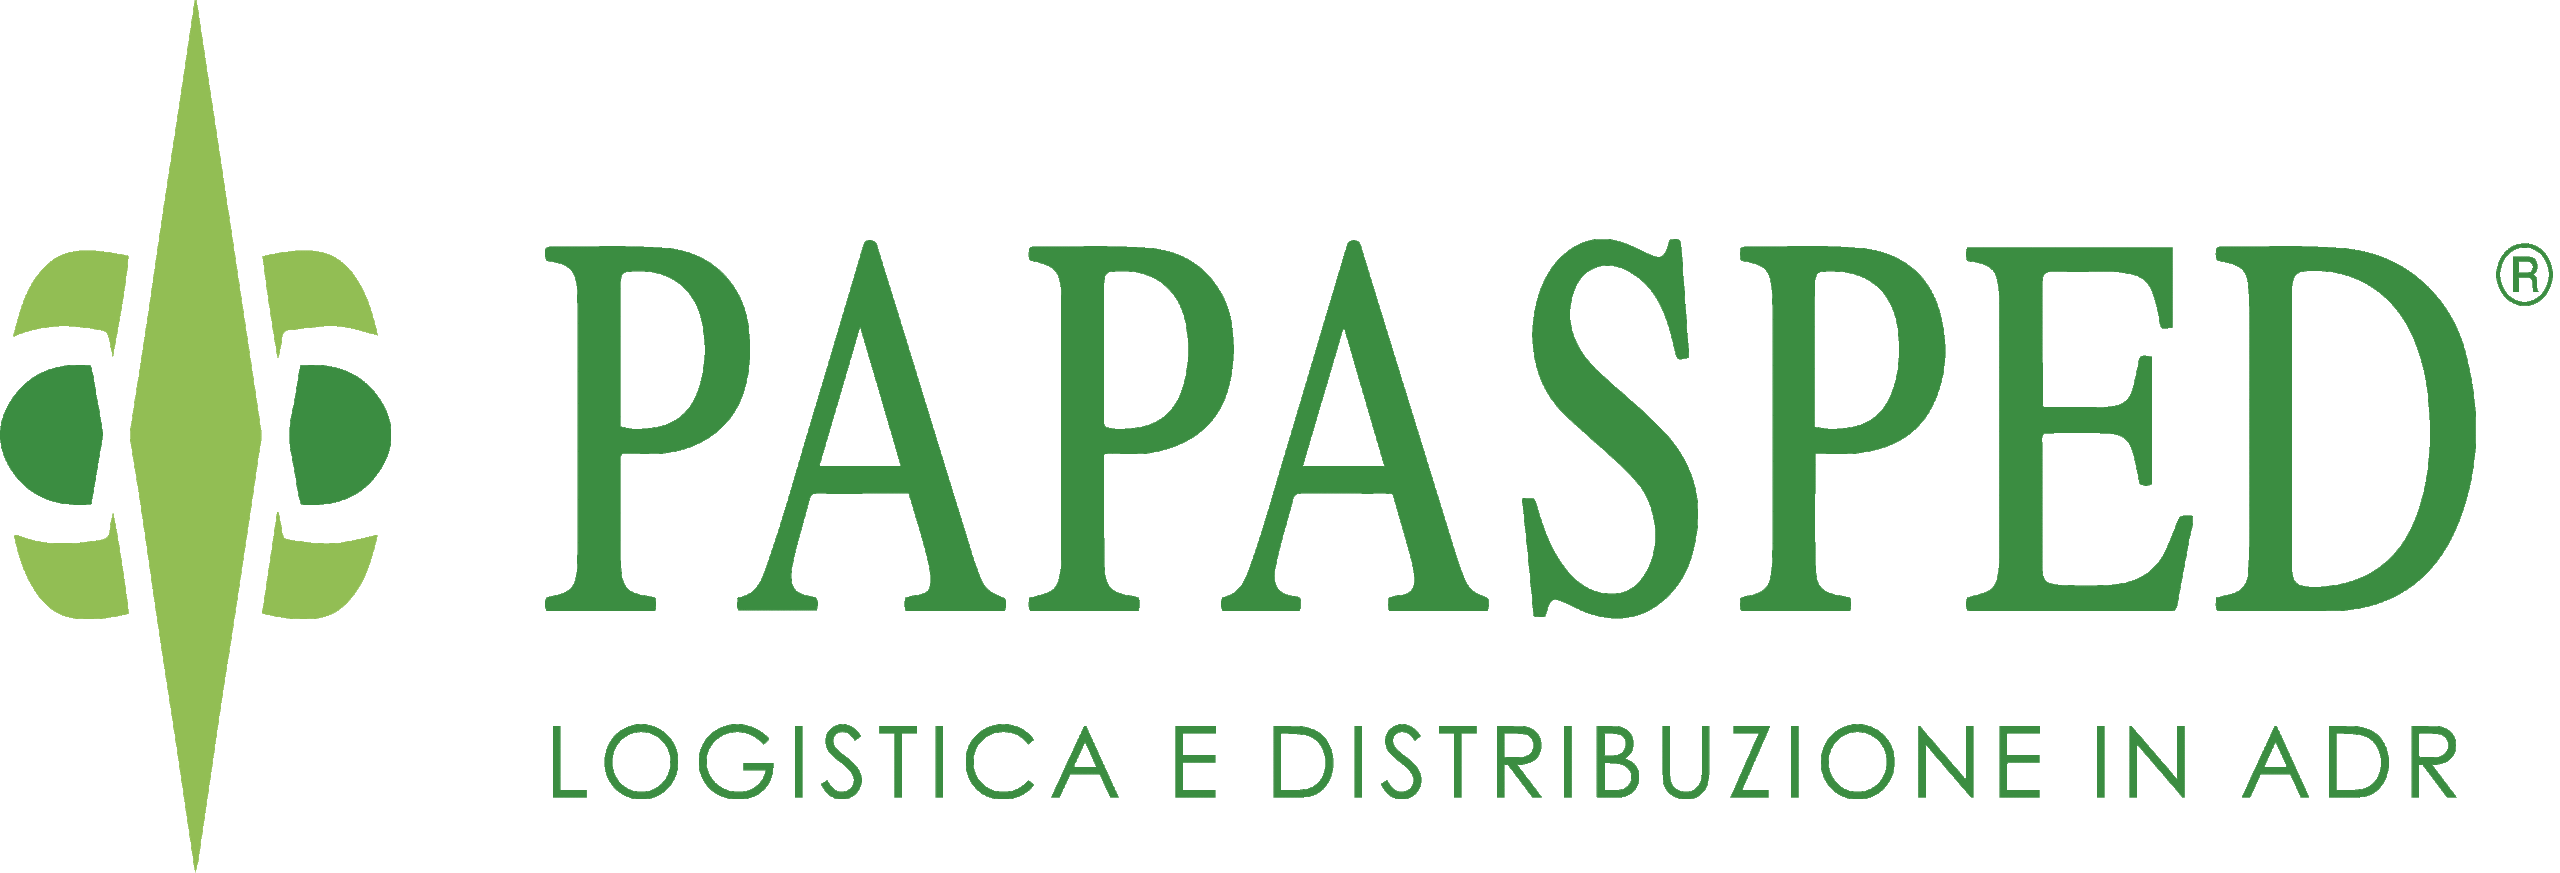 PAPASPED – Logistica e distribuzione in ADR